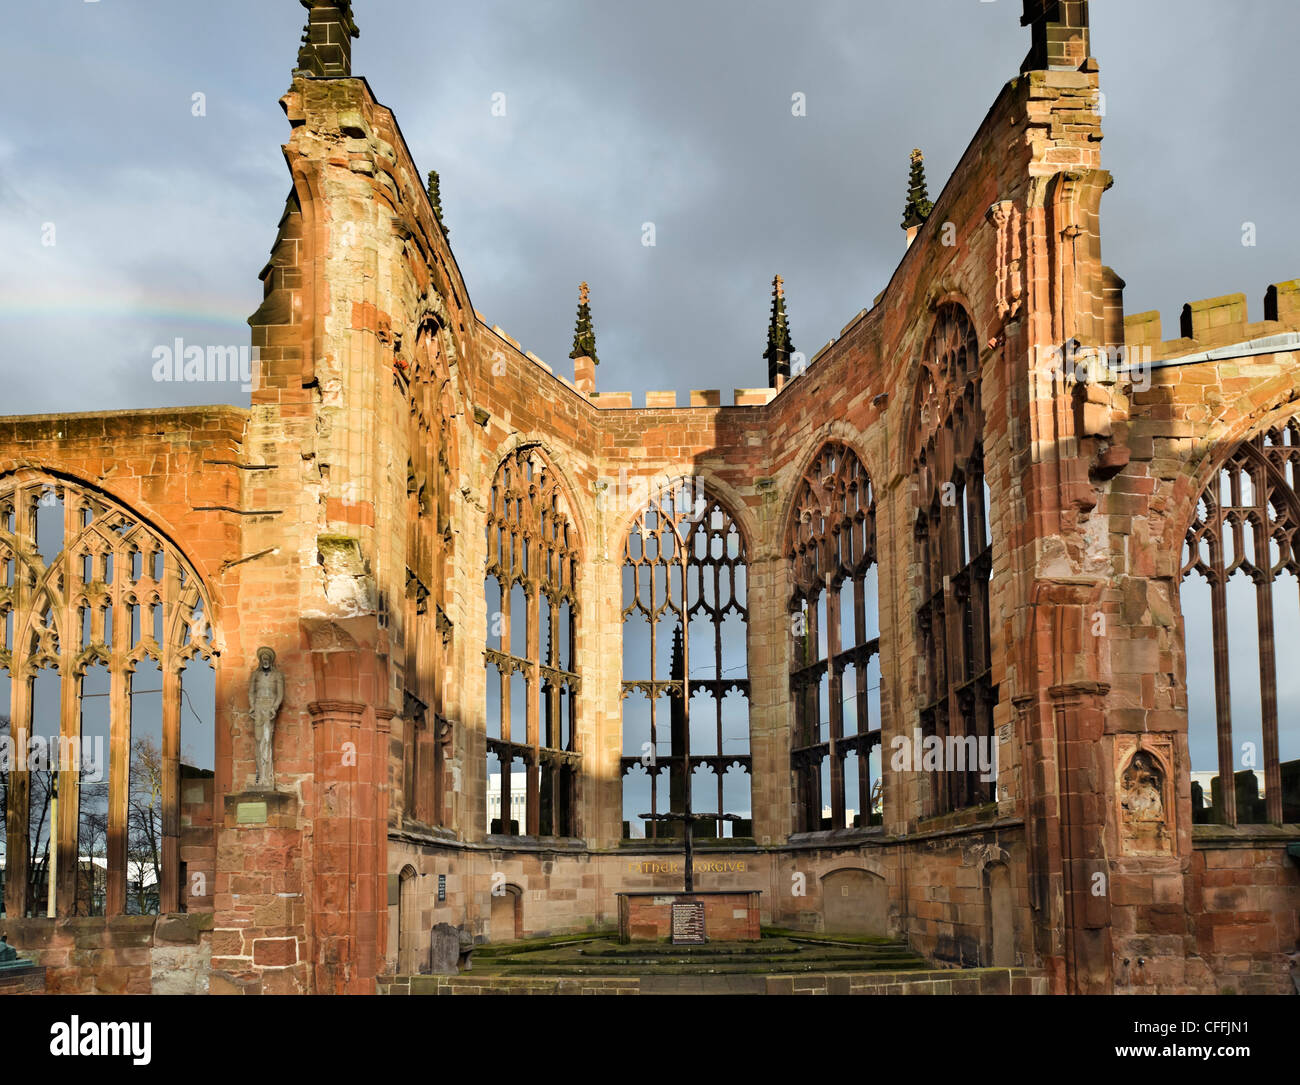 El altar de la antigua catedral bombardeado en la tarde el sol después de una tormenta, Coventry, West Midlands, Inglaterra, Reino Unido. Foto de stock